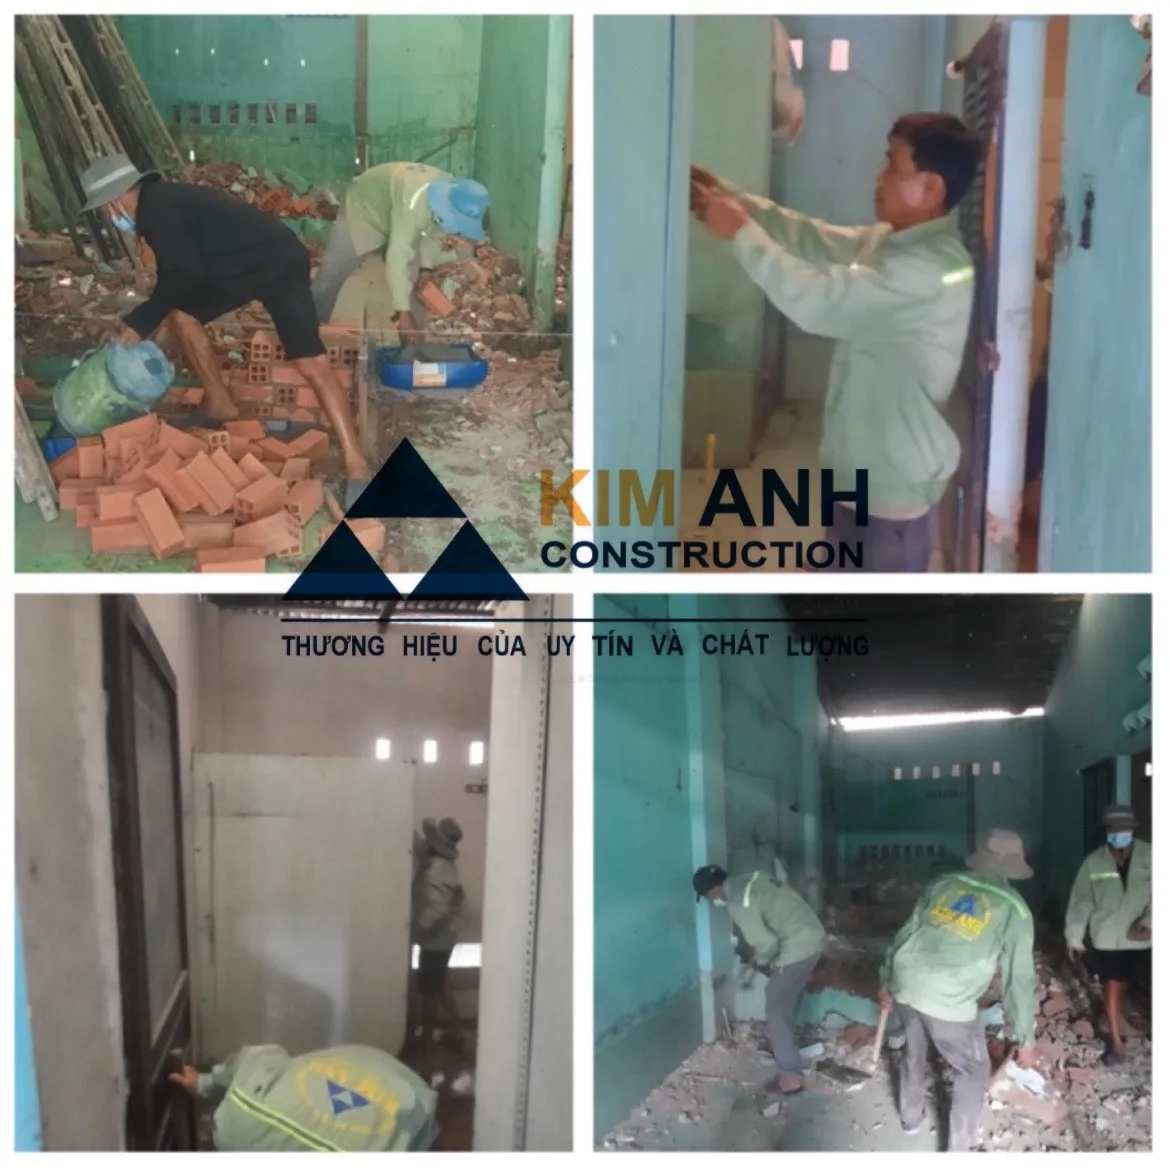 Xây Dựng Kim Anh sửa chữa nhà Quận Bình Tân